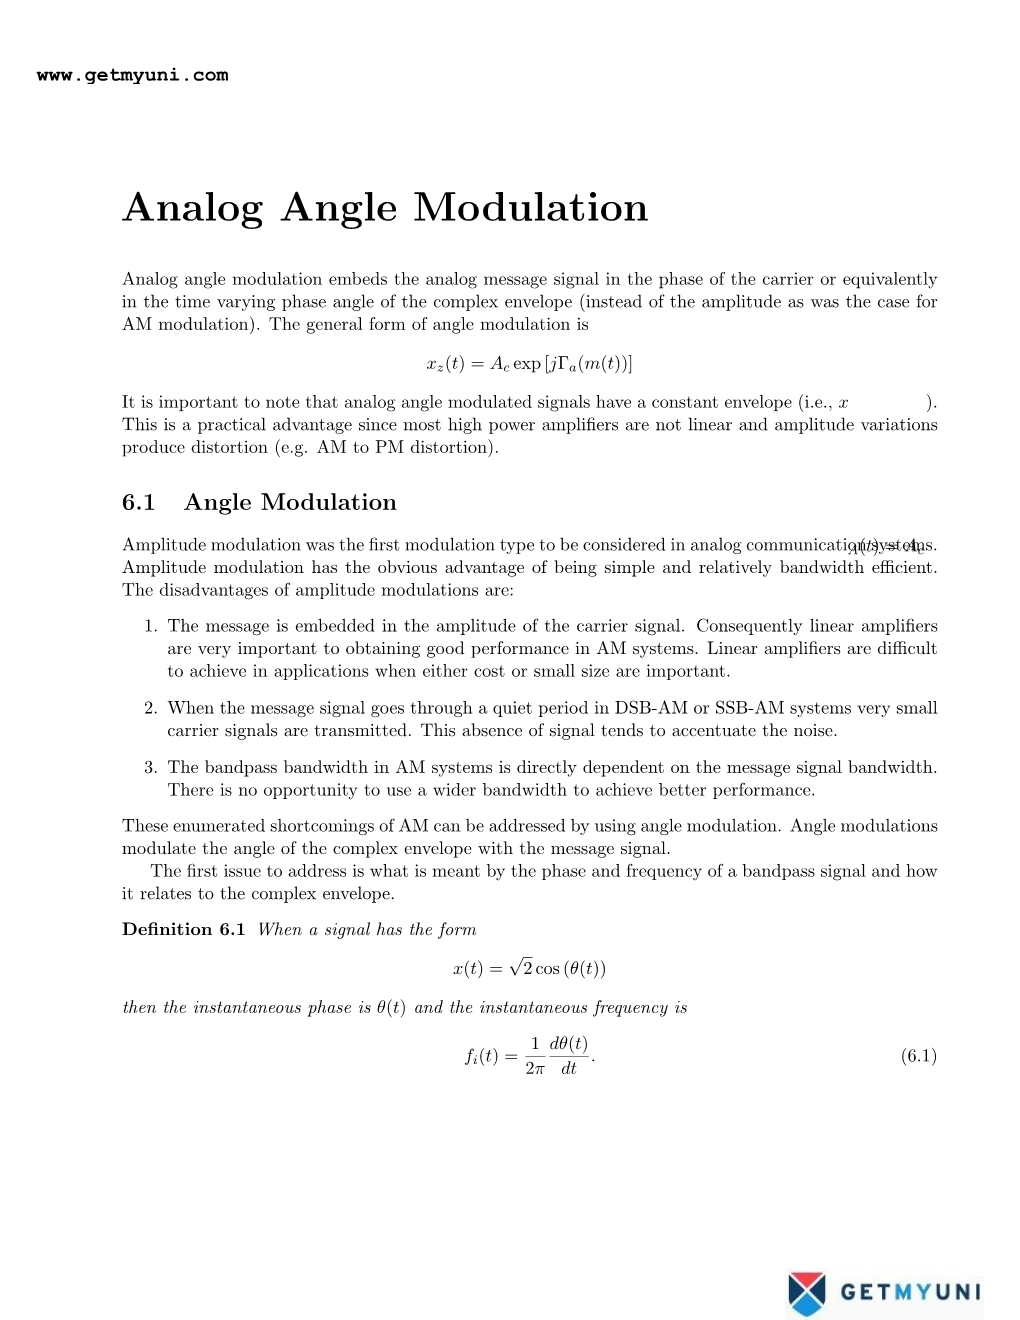 Analog Angle Modulation